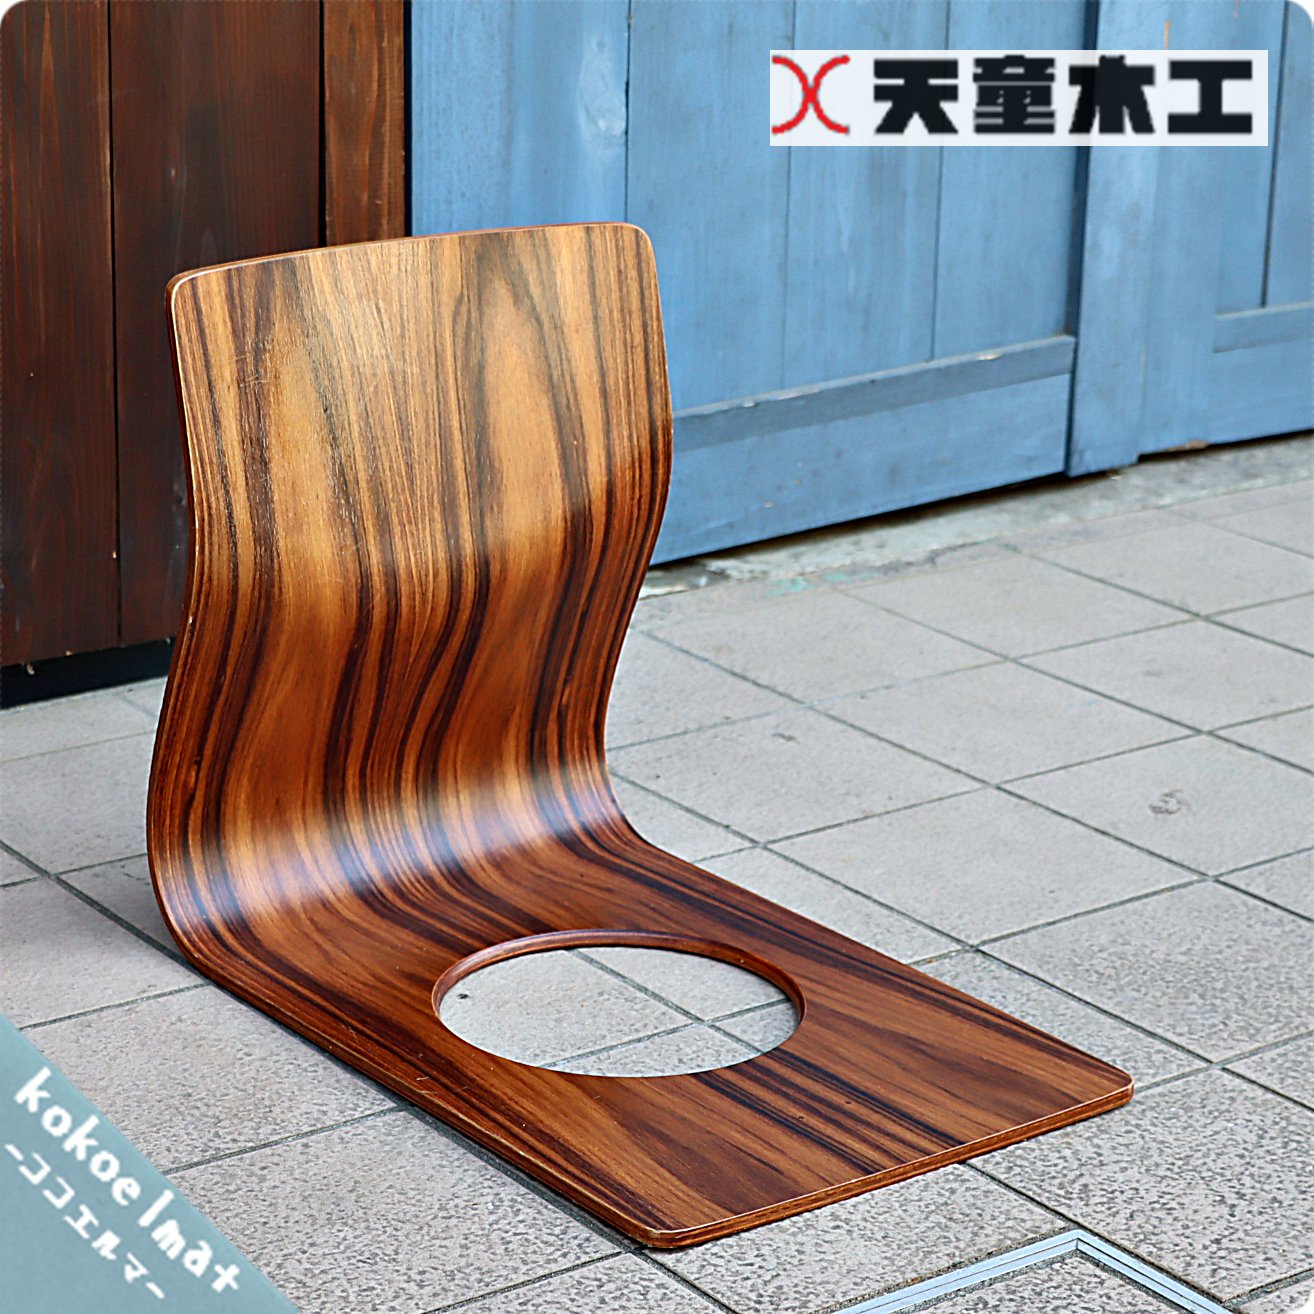 天童木工(TENDO)の稀少なローズウッドを使用した曲木 座椅子です 